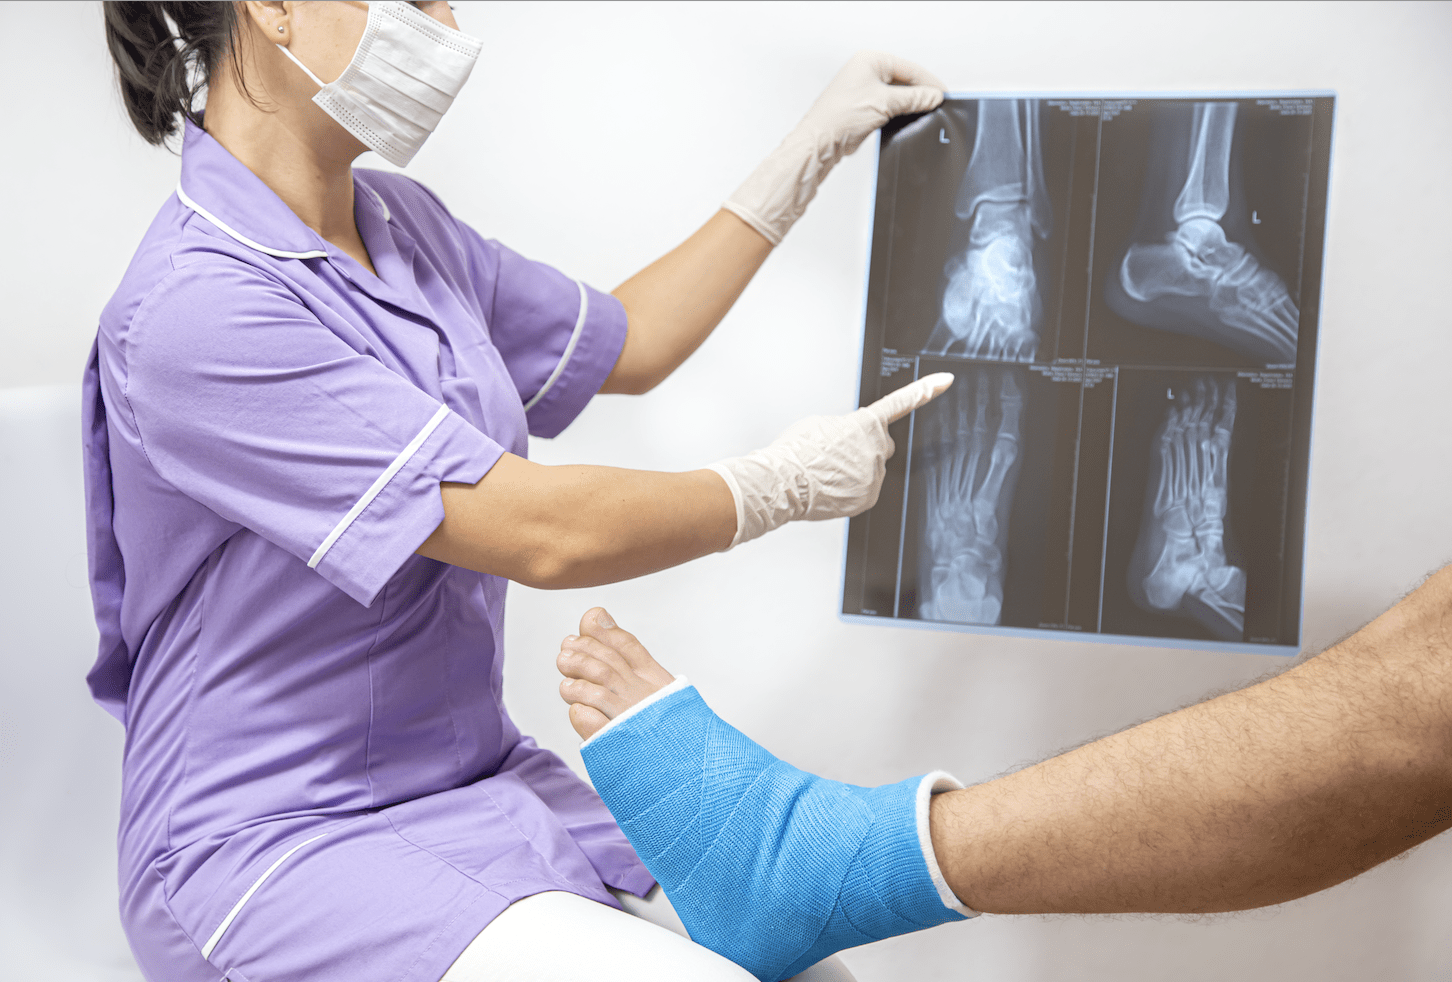 Rehabilitación post operado de Tobillo y Pie: tipos de lesiones, criterios, cuidados y tratamientos de kinesiología